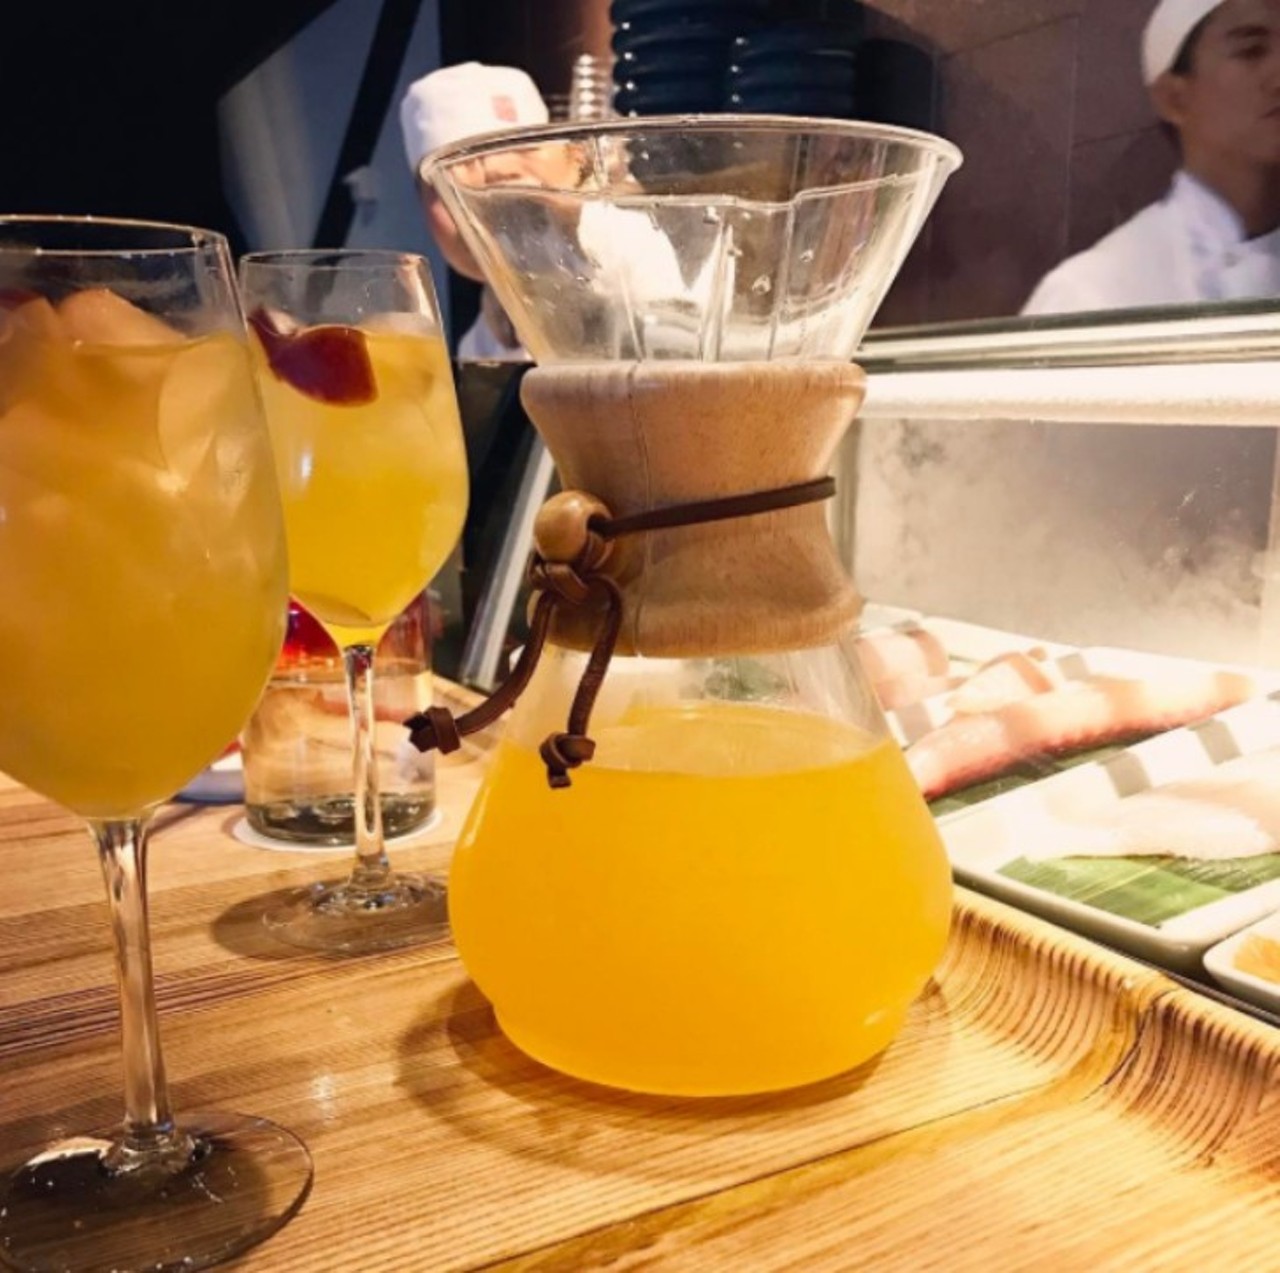 Morimoto Asia at Disney Springs
What to drink: Sake Sangria
Photo via kdbornstein/Instagram